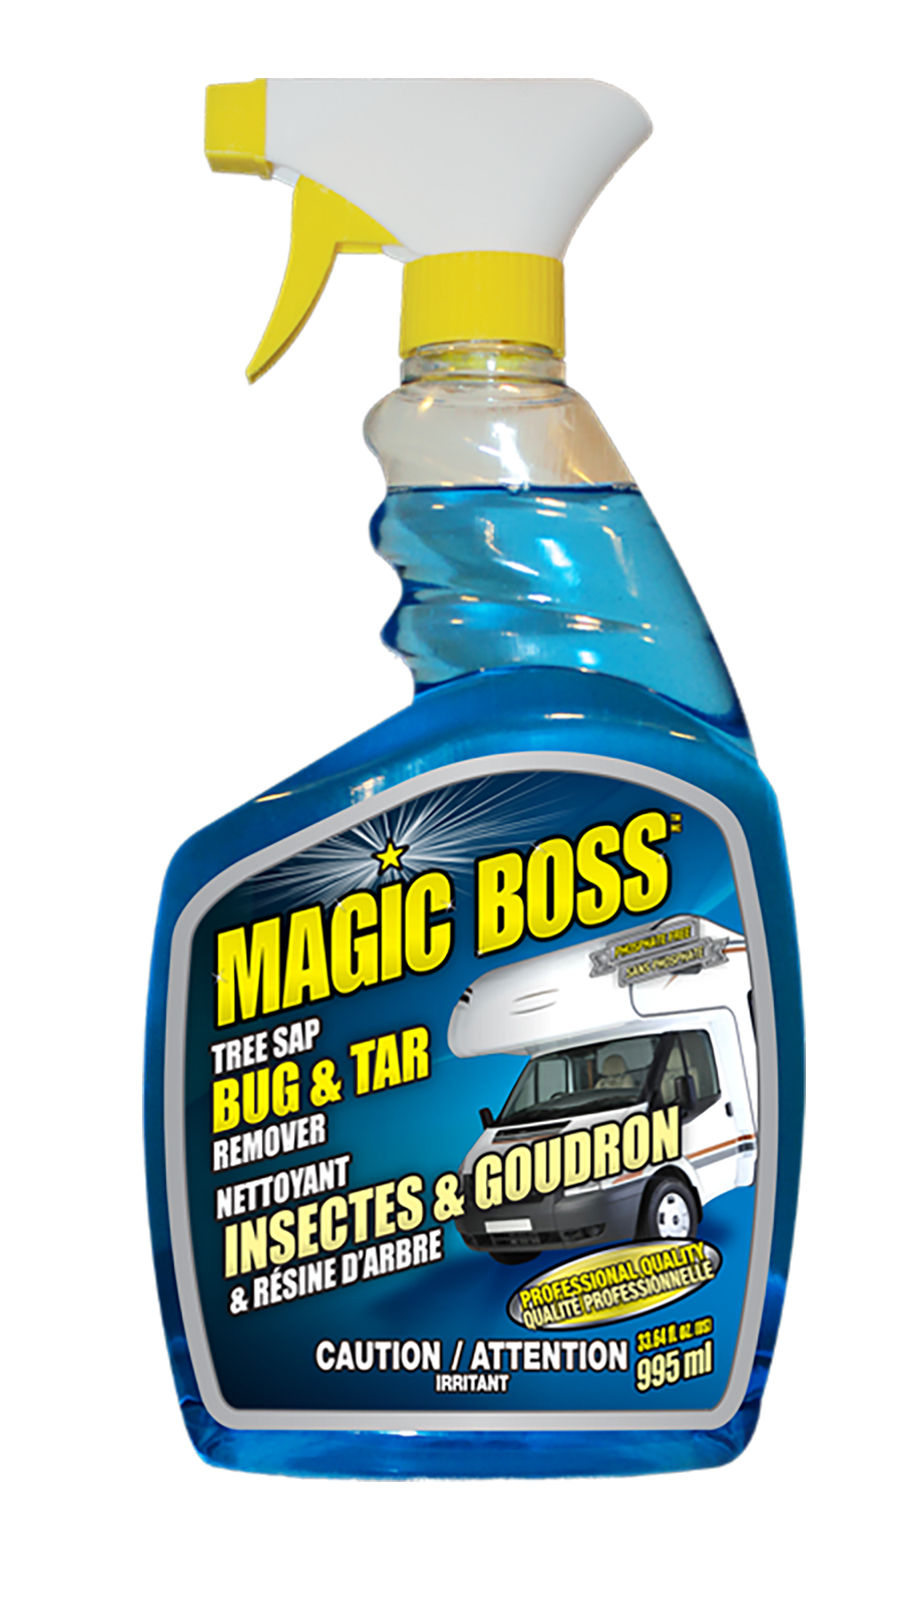 Magic Boss 1791 - Box of 12, Bug & Tar Remover (995 ml)